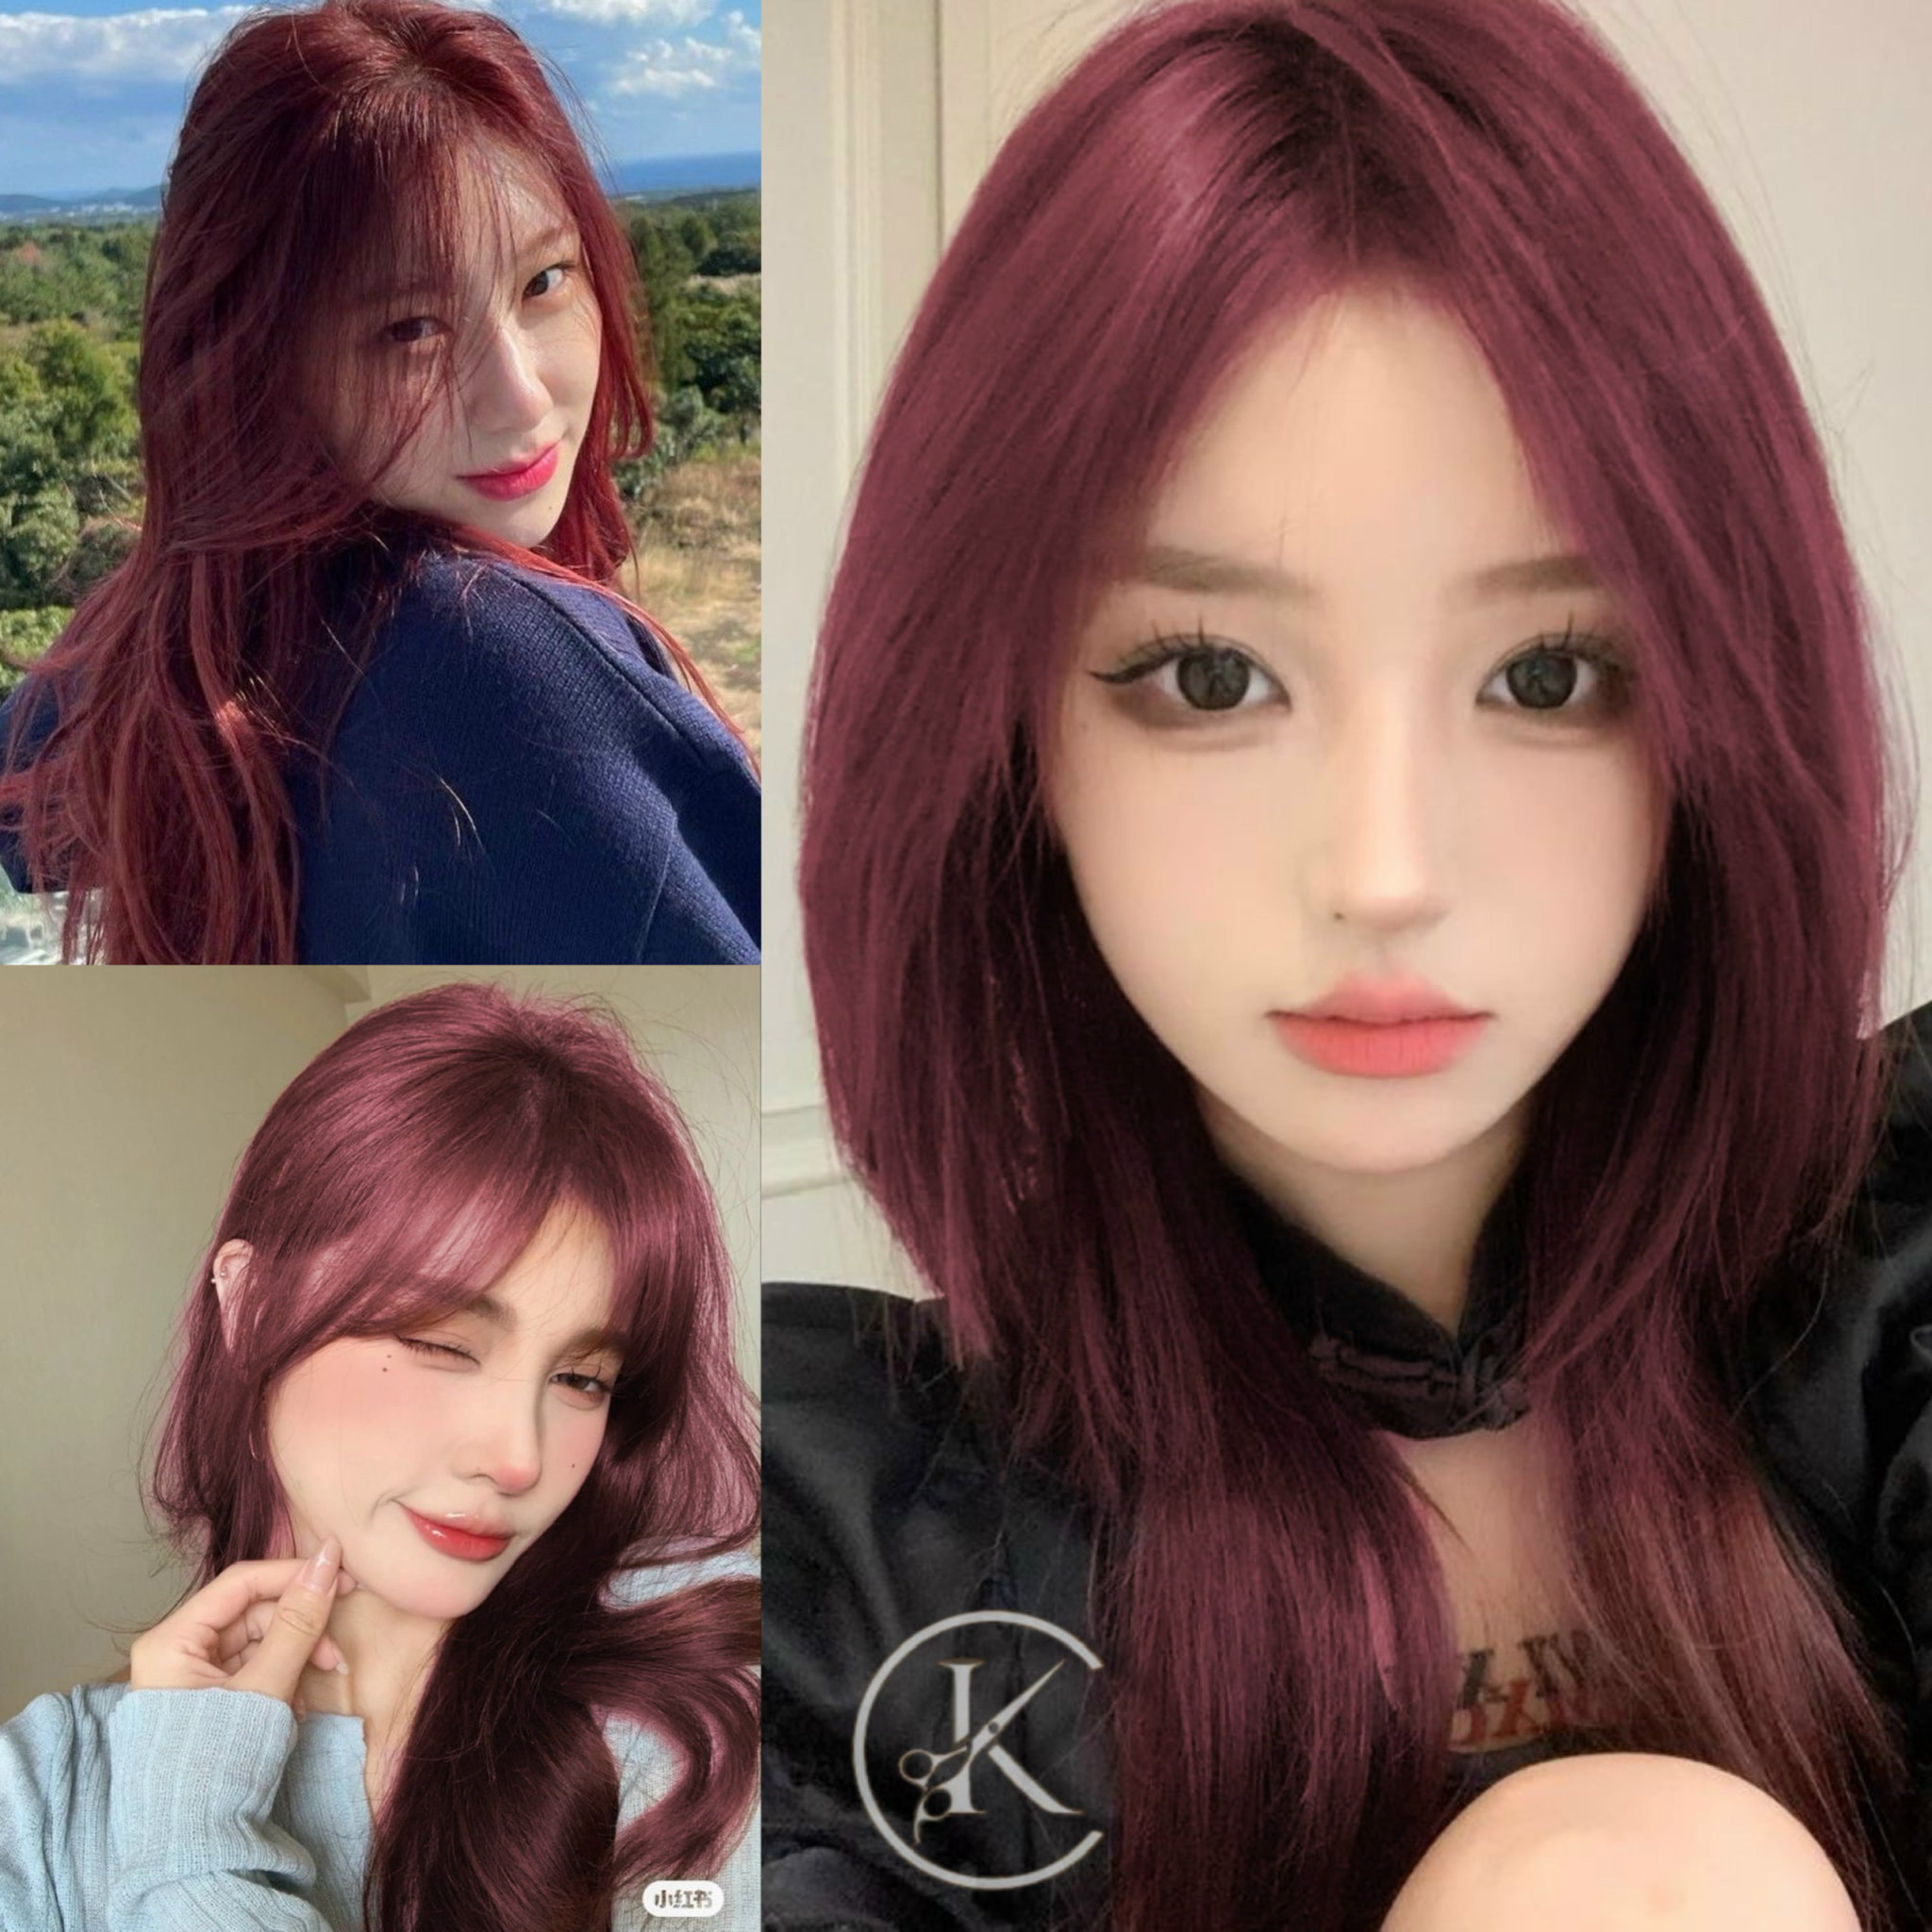 Tóc màu đen cũng rất đẹp nhưng tóc màu đỏ đen sẽ giúp bạn nổi bật hơn nữa. Nhuộm tóc màu đỏ đen sẽ giúp bạn tạo nên vẻ đẹp khác biệt và gợi cảm. Hãy xem hình ảnh liên quan để cảm nhận vẻ đẹp của tóc đỏ đen!